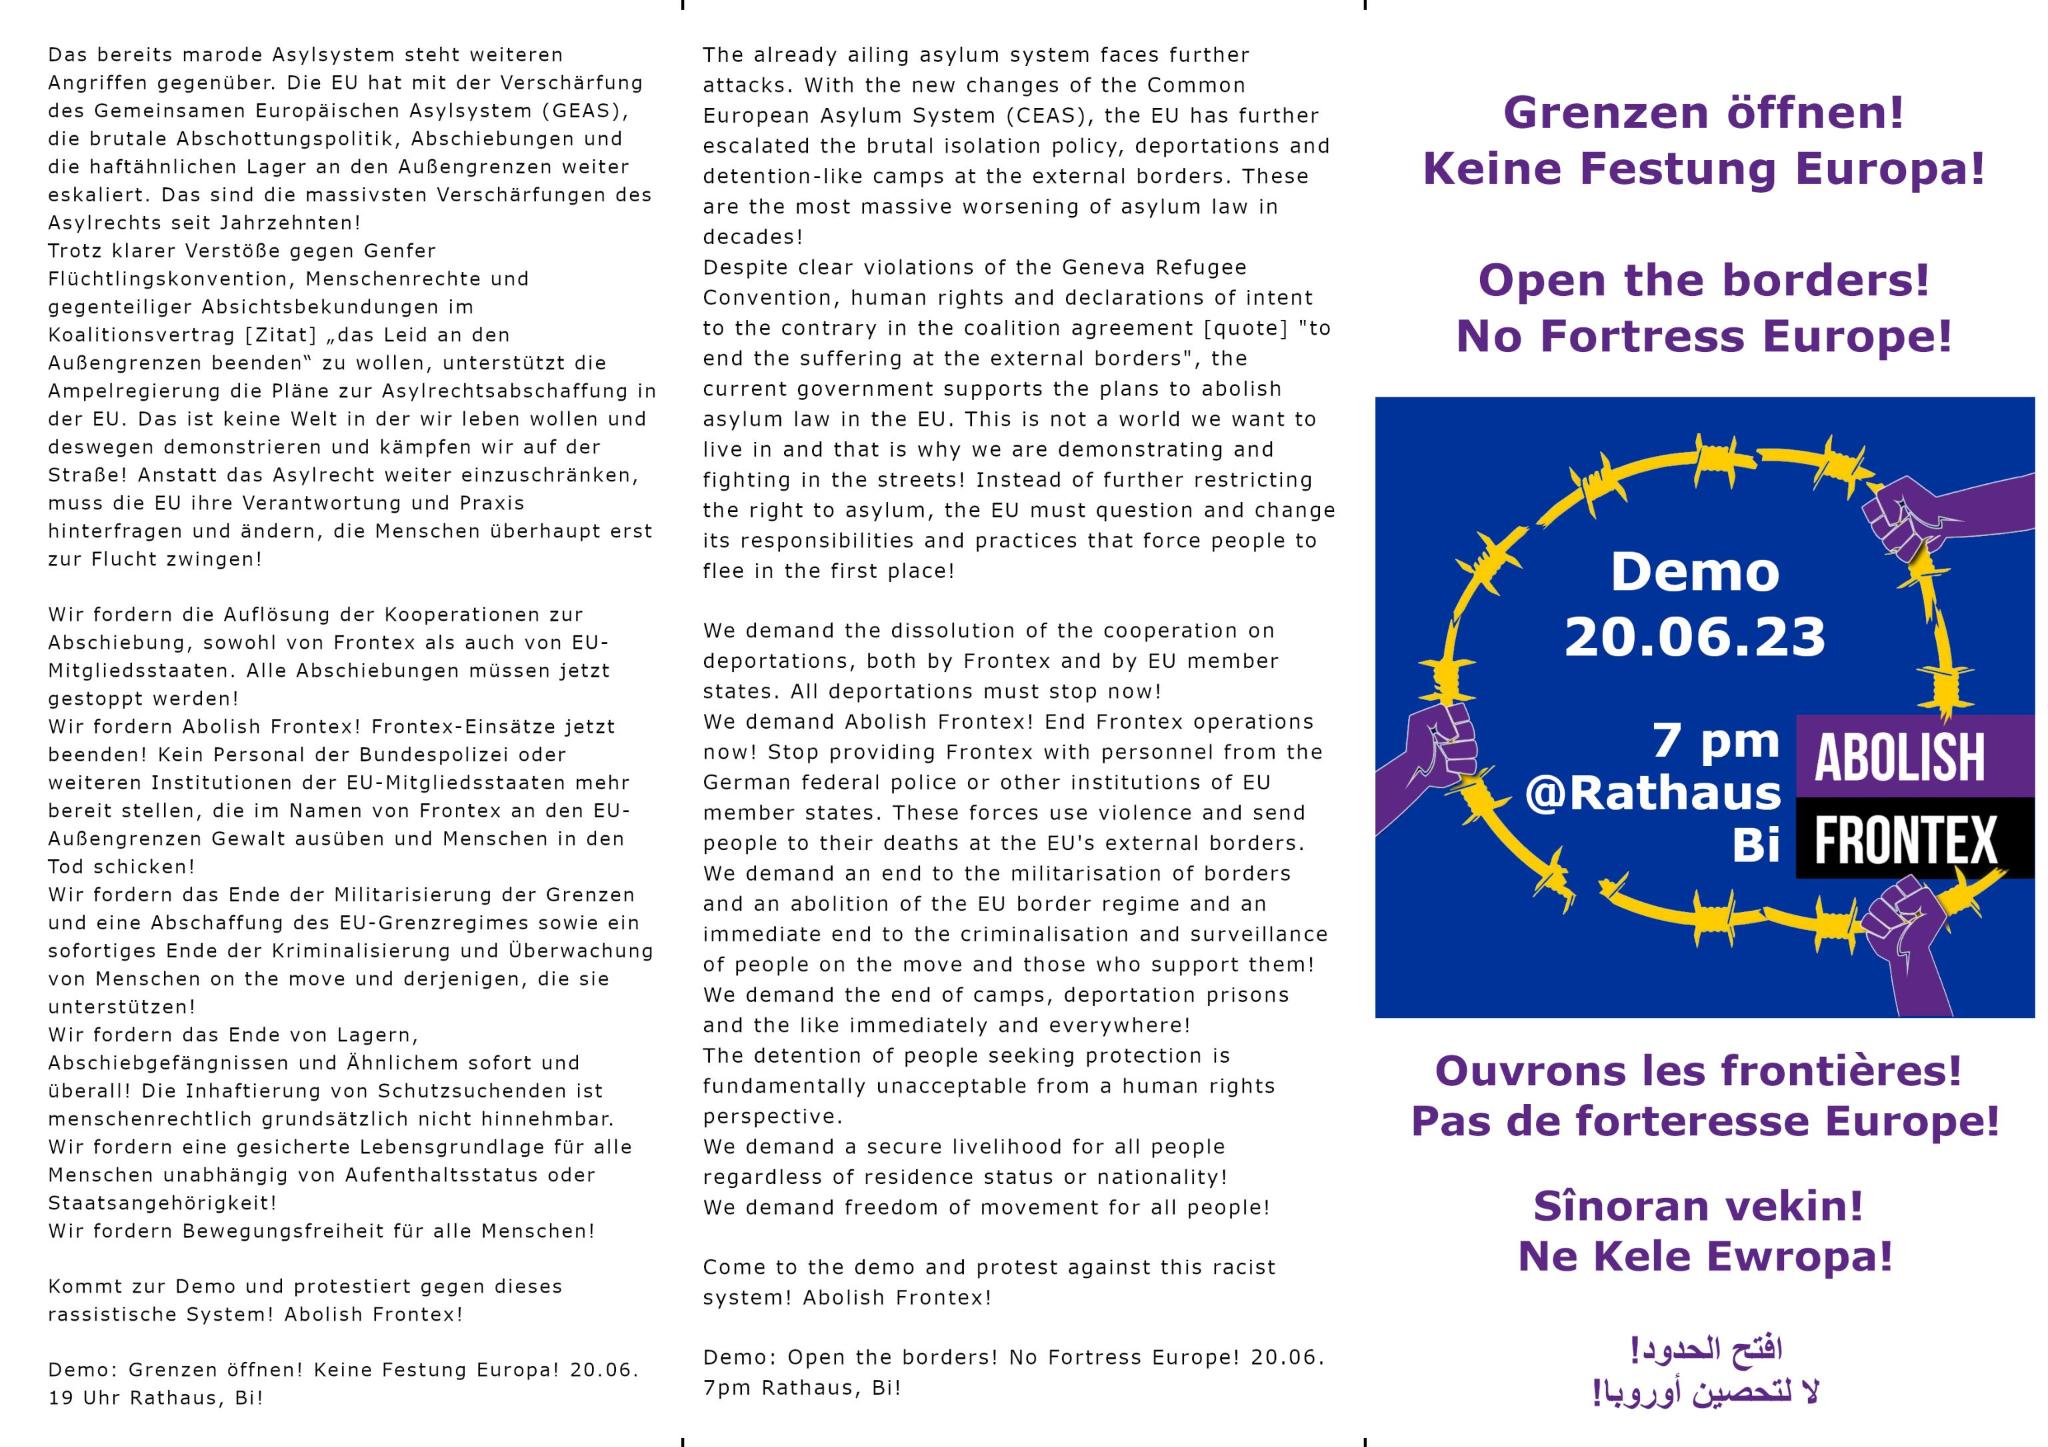 Demo +++ Grenzen öffnen! Keine Festung Europa!